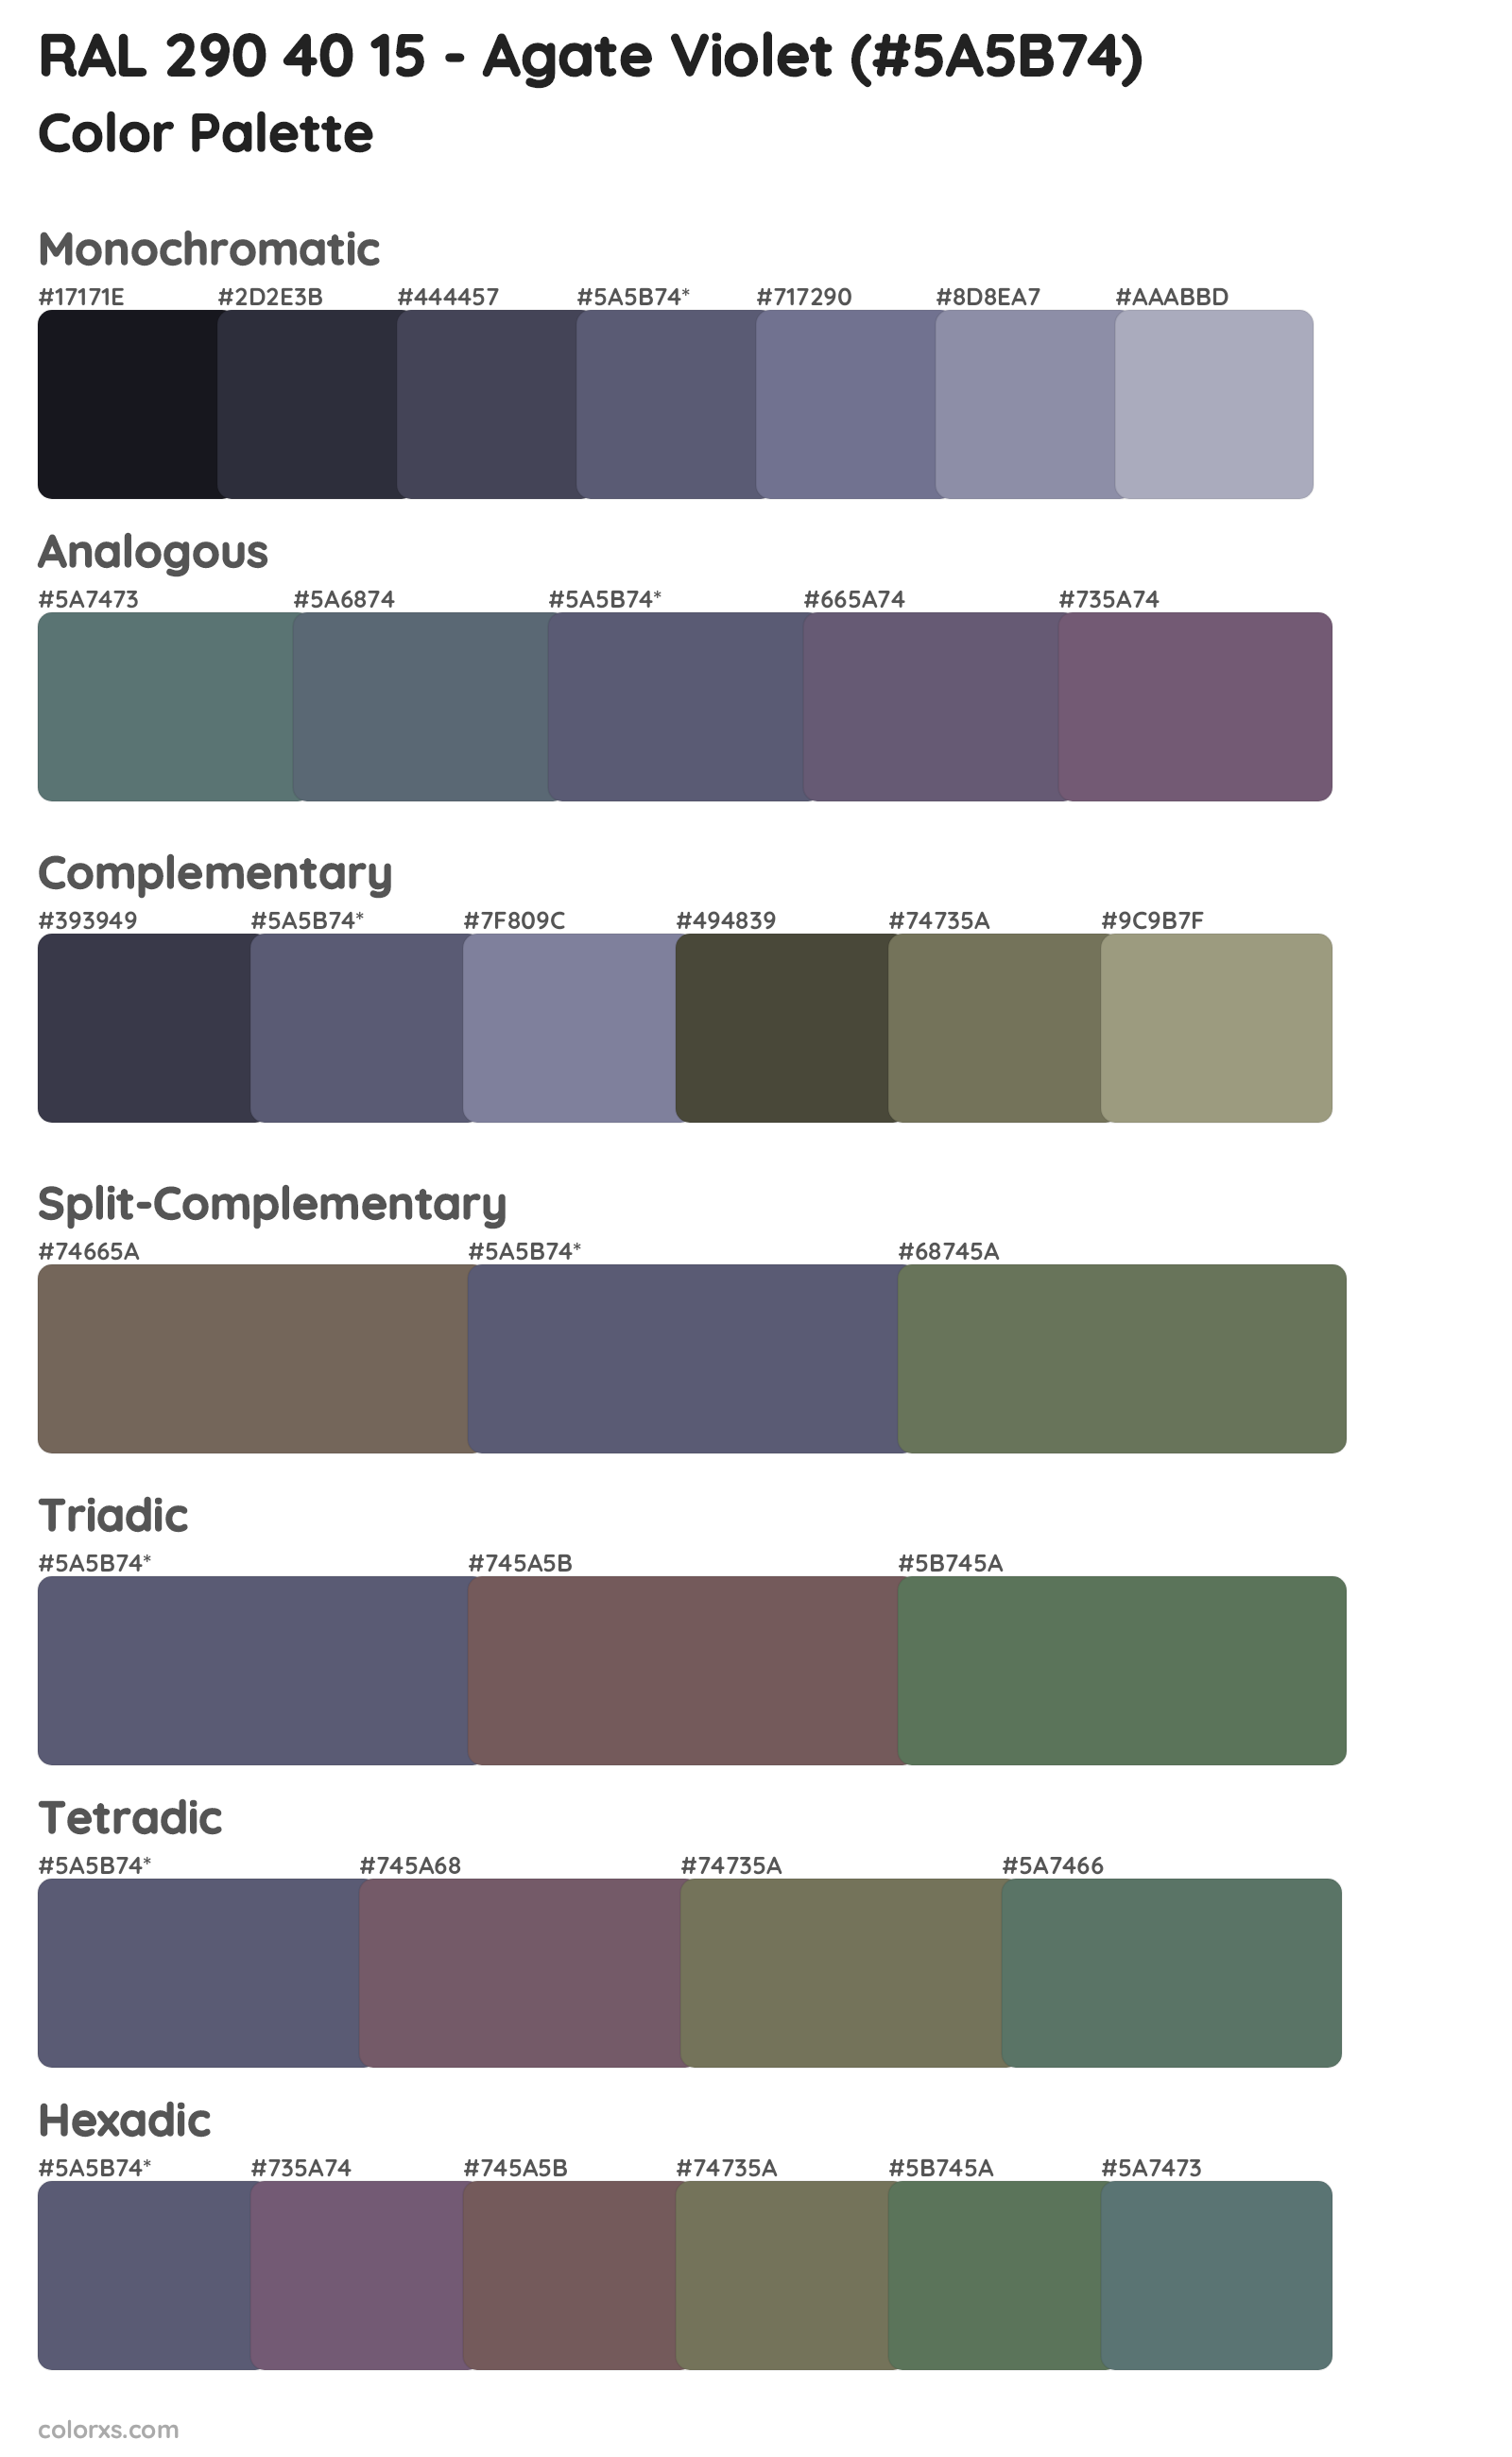 RAL 290 40 15 - Agate Violet Color Scheme Palettes